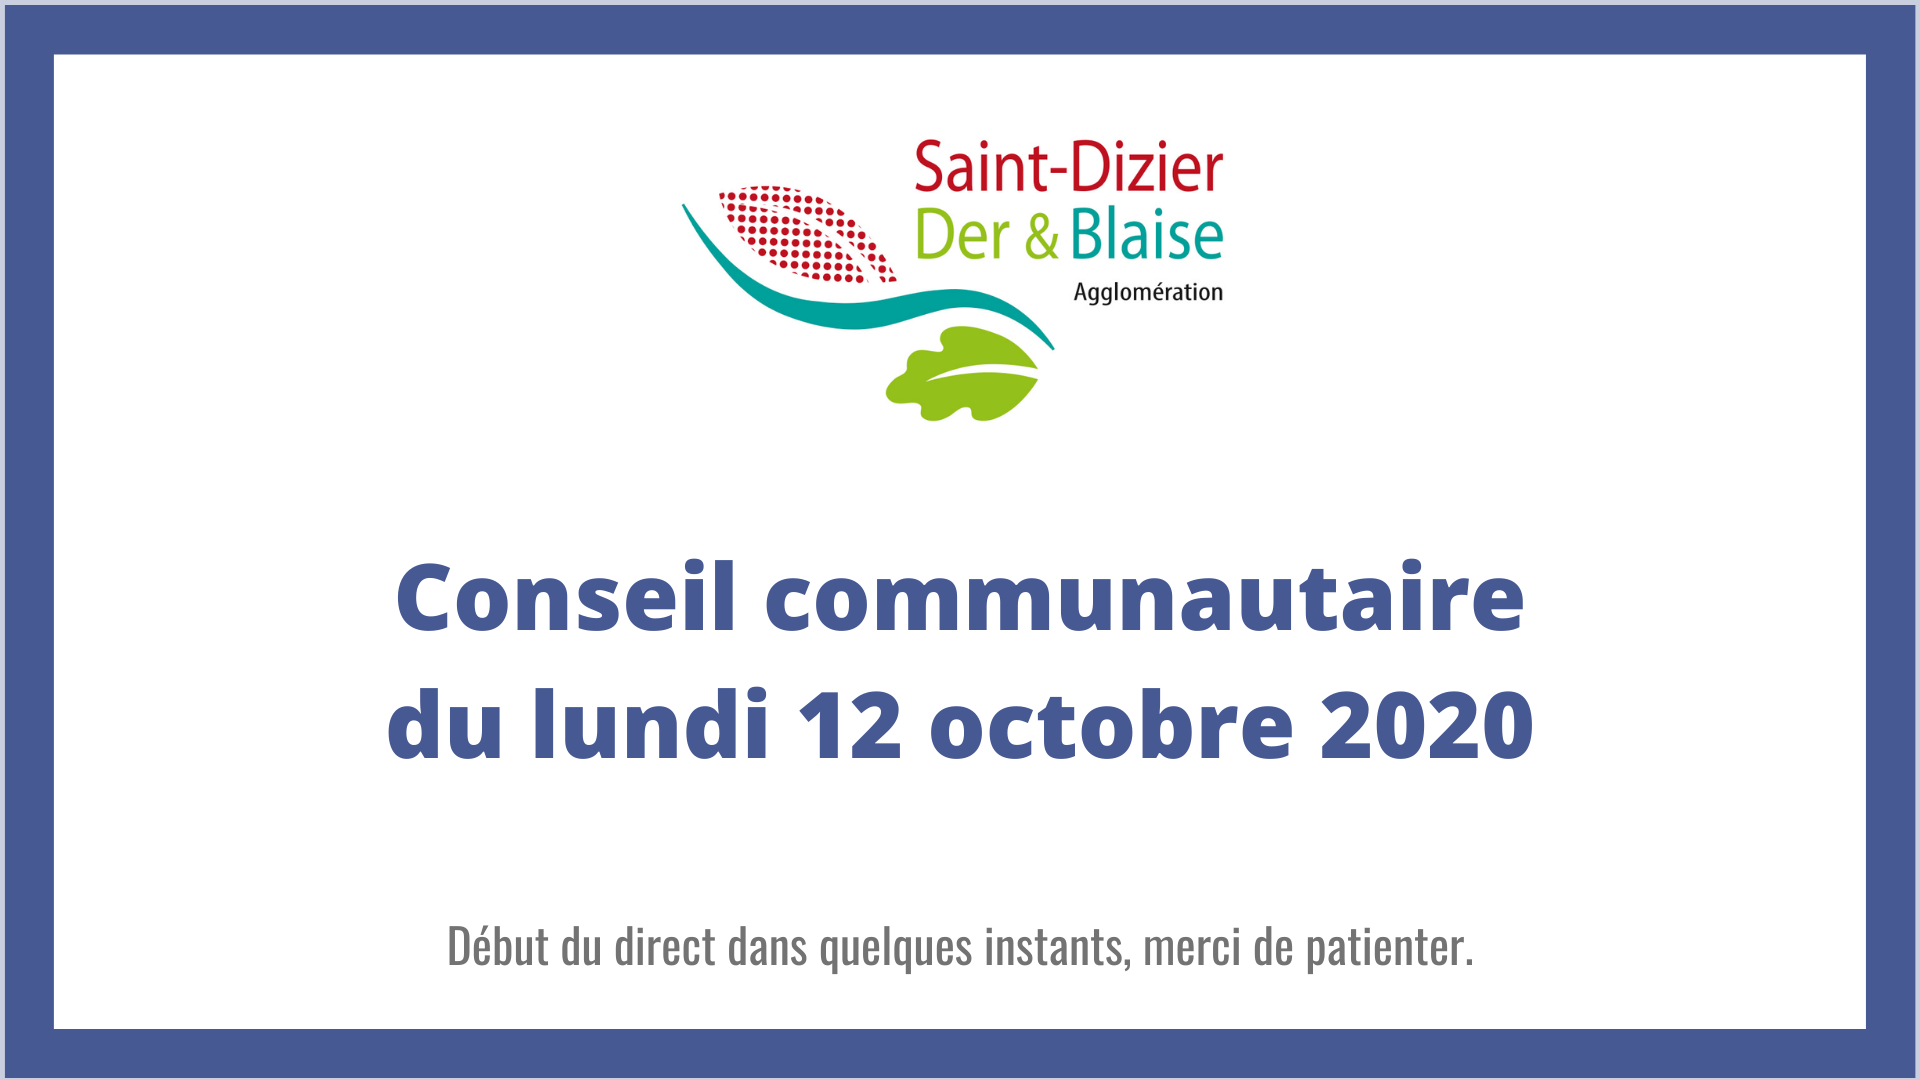 Communauté d'agglomération Saint-Dizier, Der & Blaise - Conseil communautaire du 12 octobre 2020